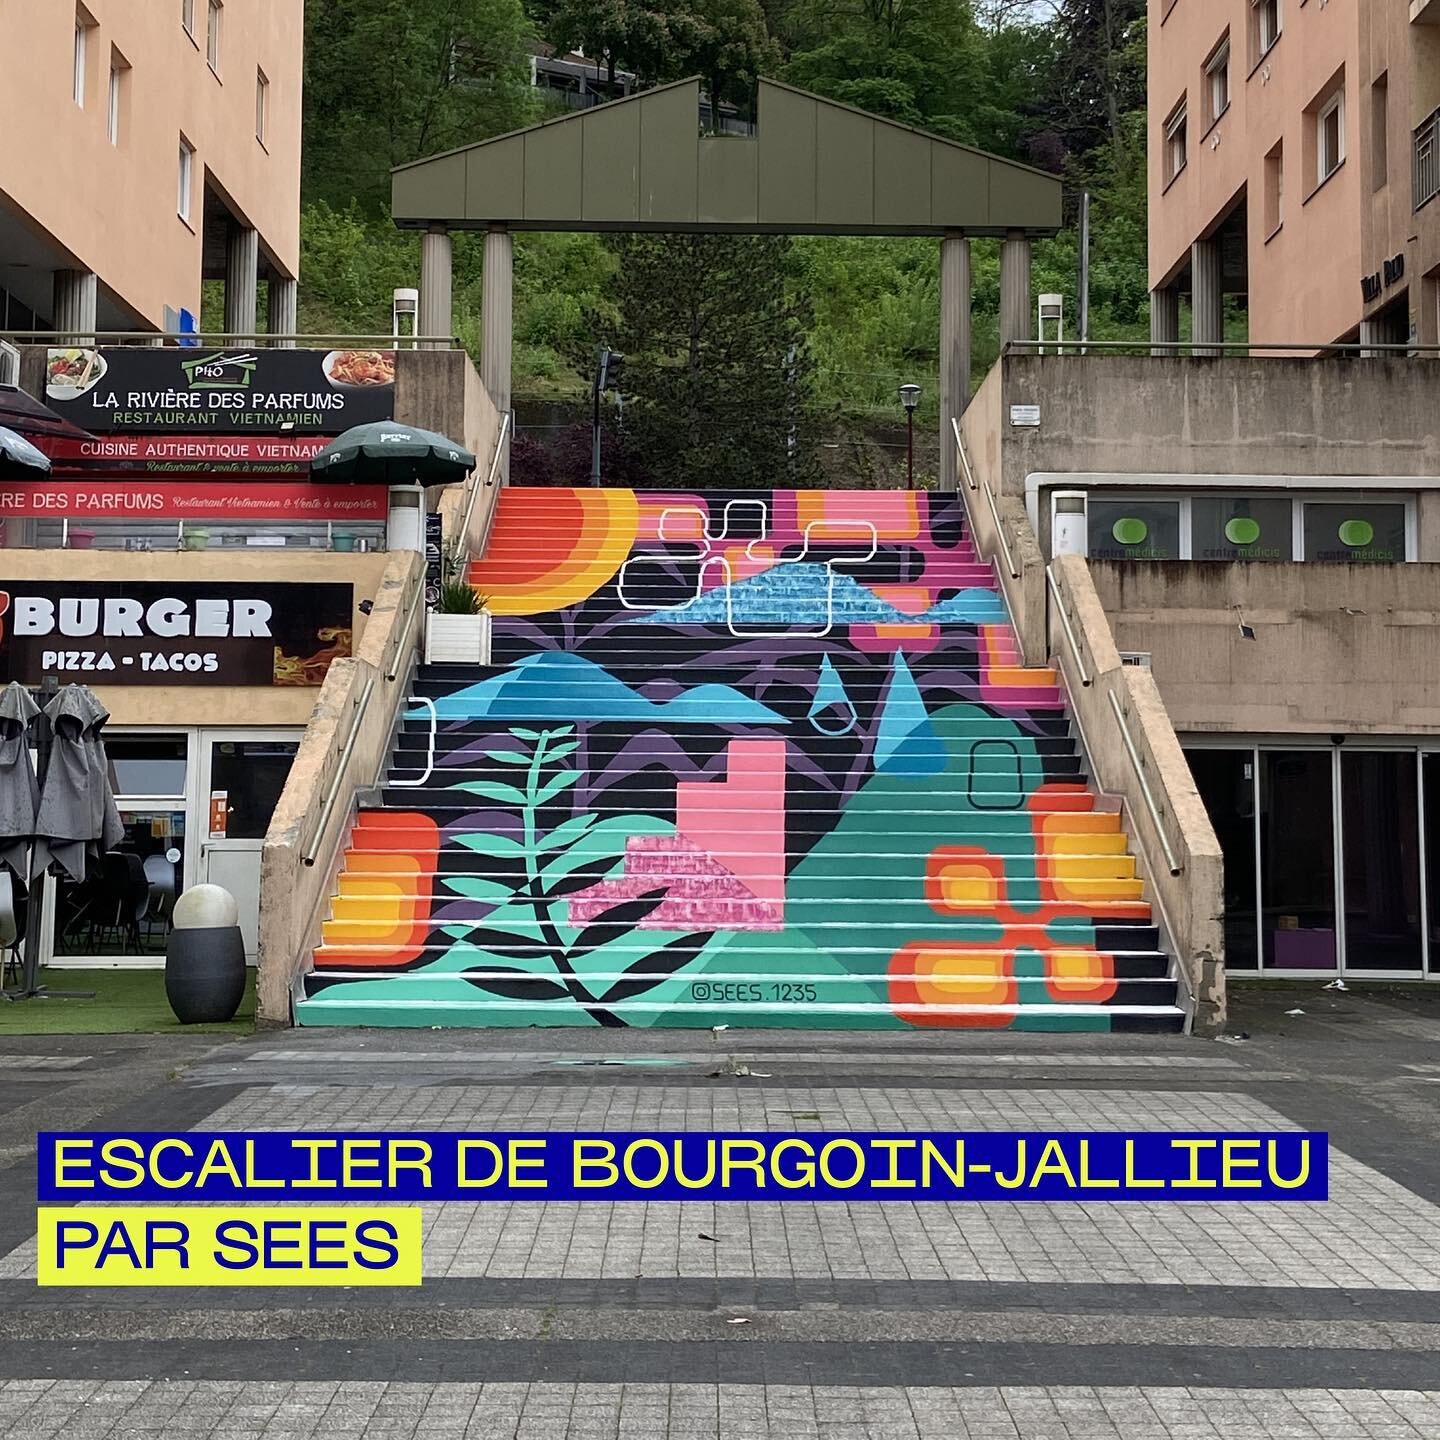 Les escaliers de la rue des Marrettes de @bourgoinjallieu se transforment en une &oelig;uvre color&eacute;e ! 

La fresque, r&eacute;alis&eacute;e par @sees.1235, recouvre les 34 marches de l&rsquo;escalier et offre une nouvelle dimension artistique 